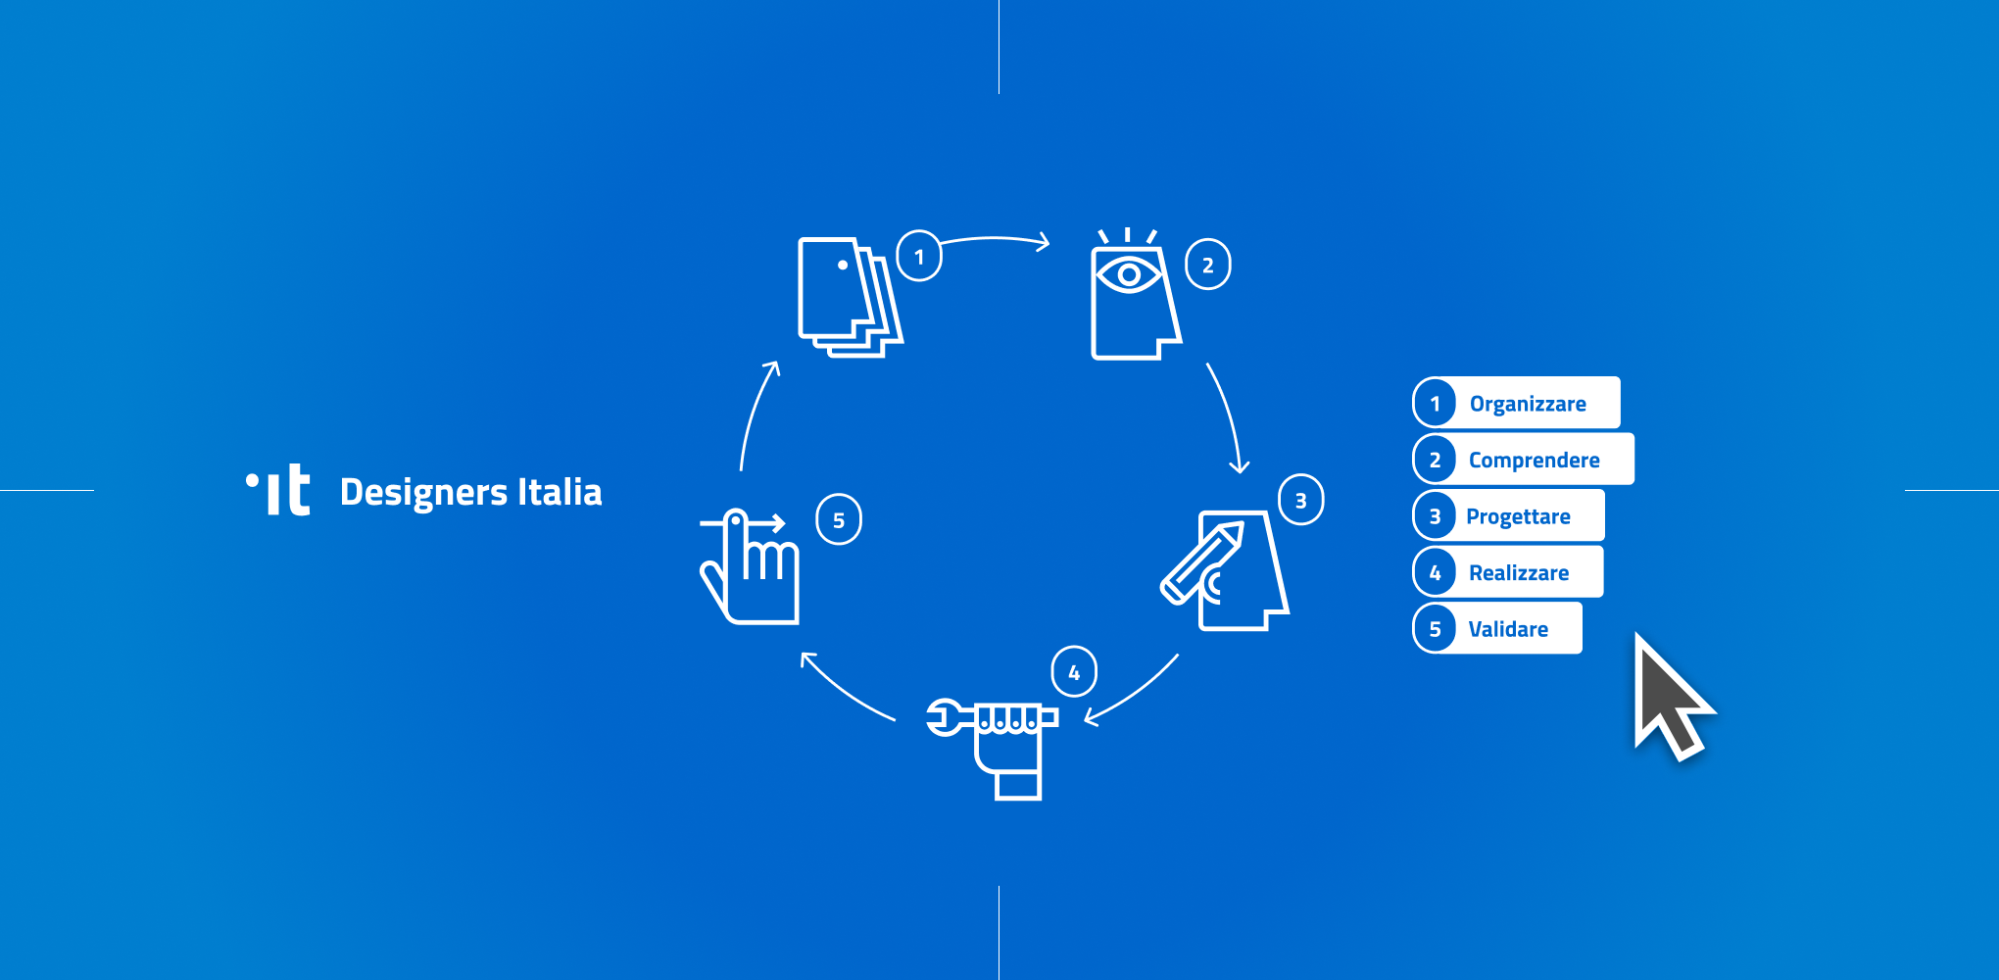 Ripartire da approccio e processo: la progettazione di servizi pubblici  digitali | by Francesco Zaia | Designers Italia | Medium